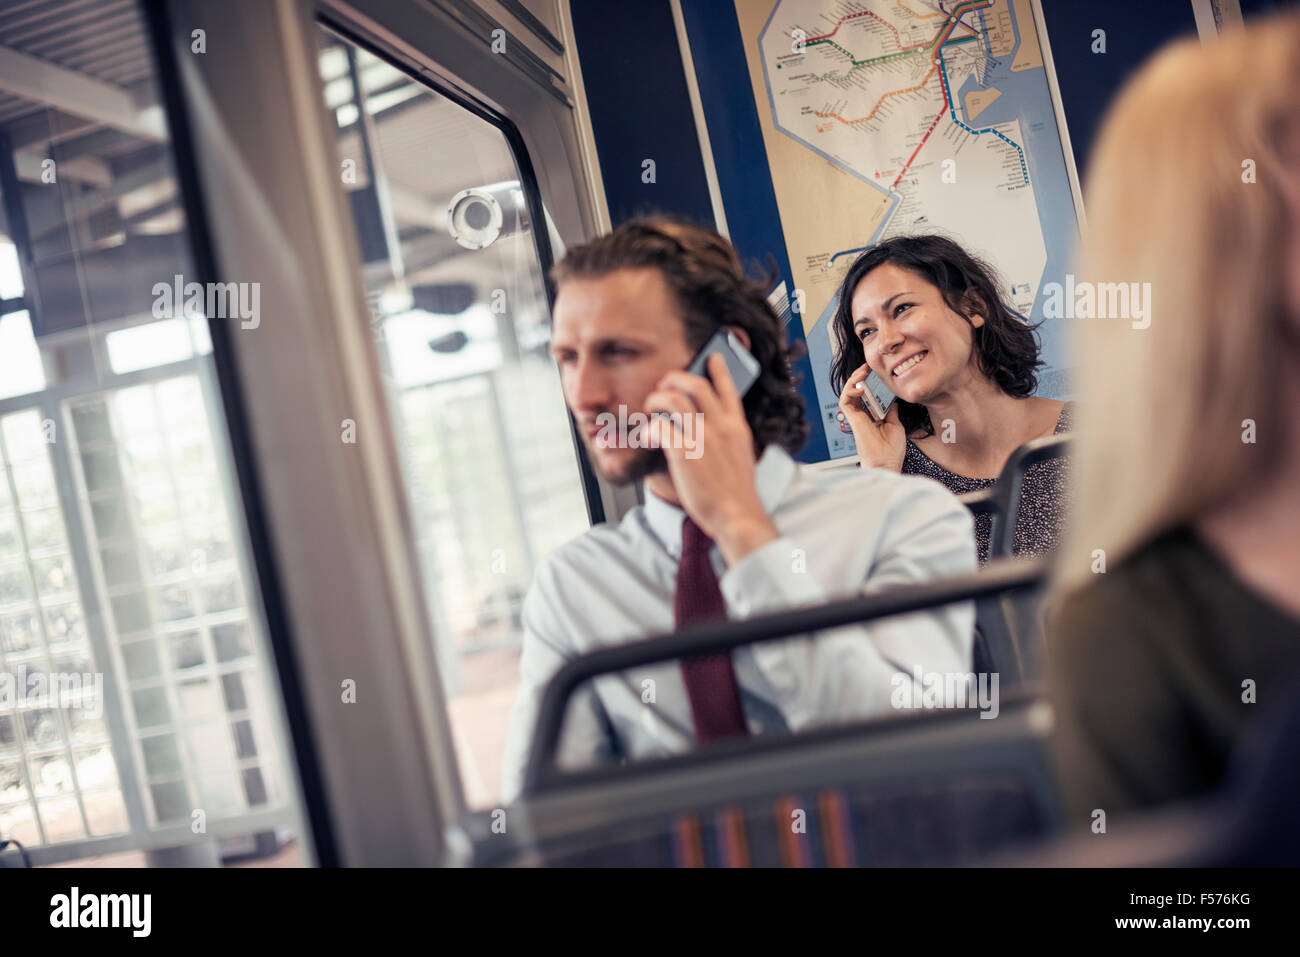 Deux personnes assises sur un bus de parler sur leur téléphone cellulaire Banque D'Images